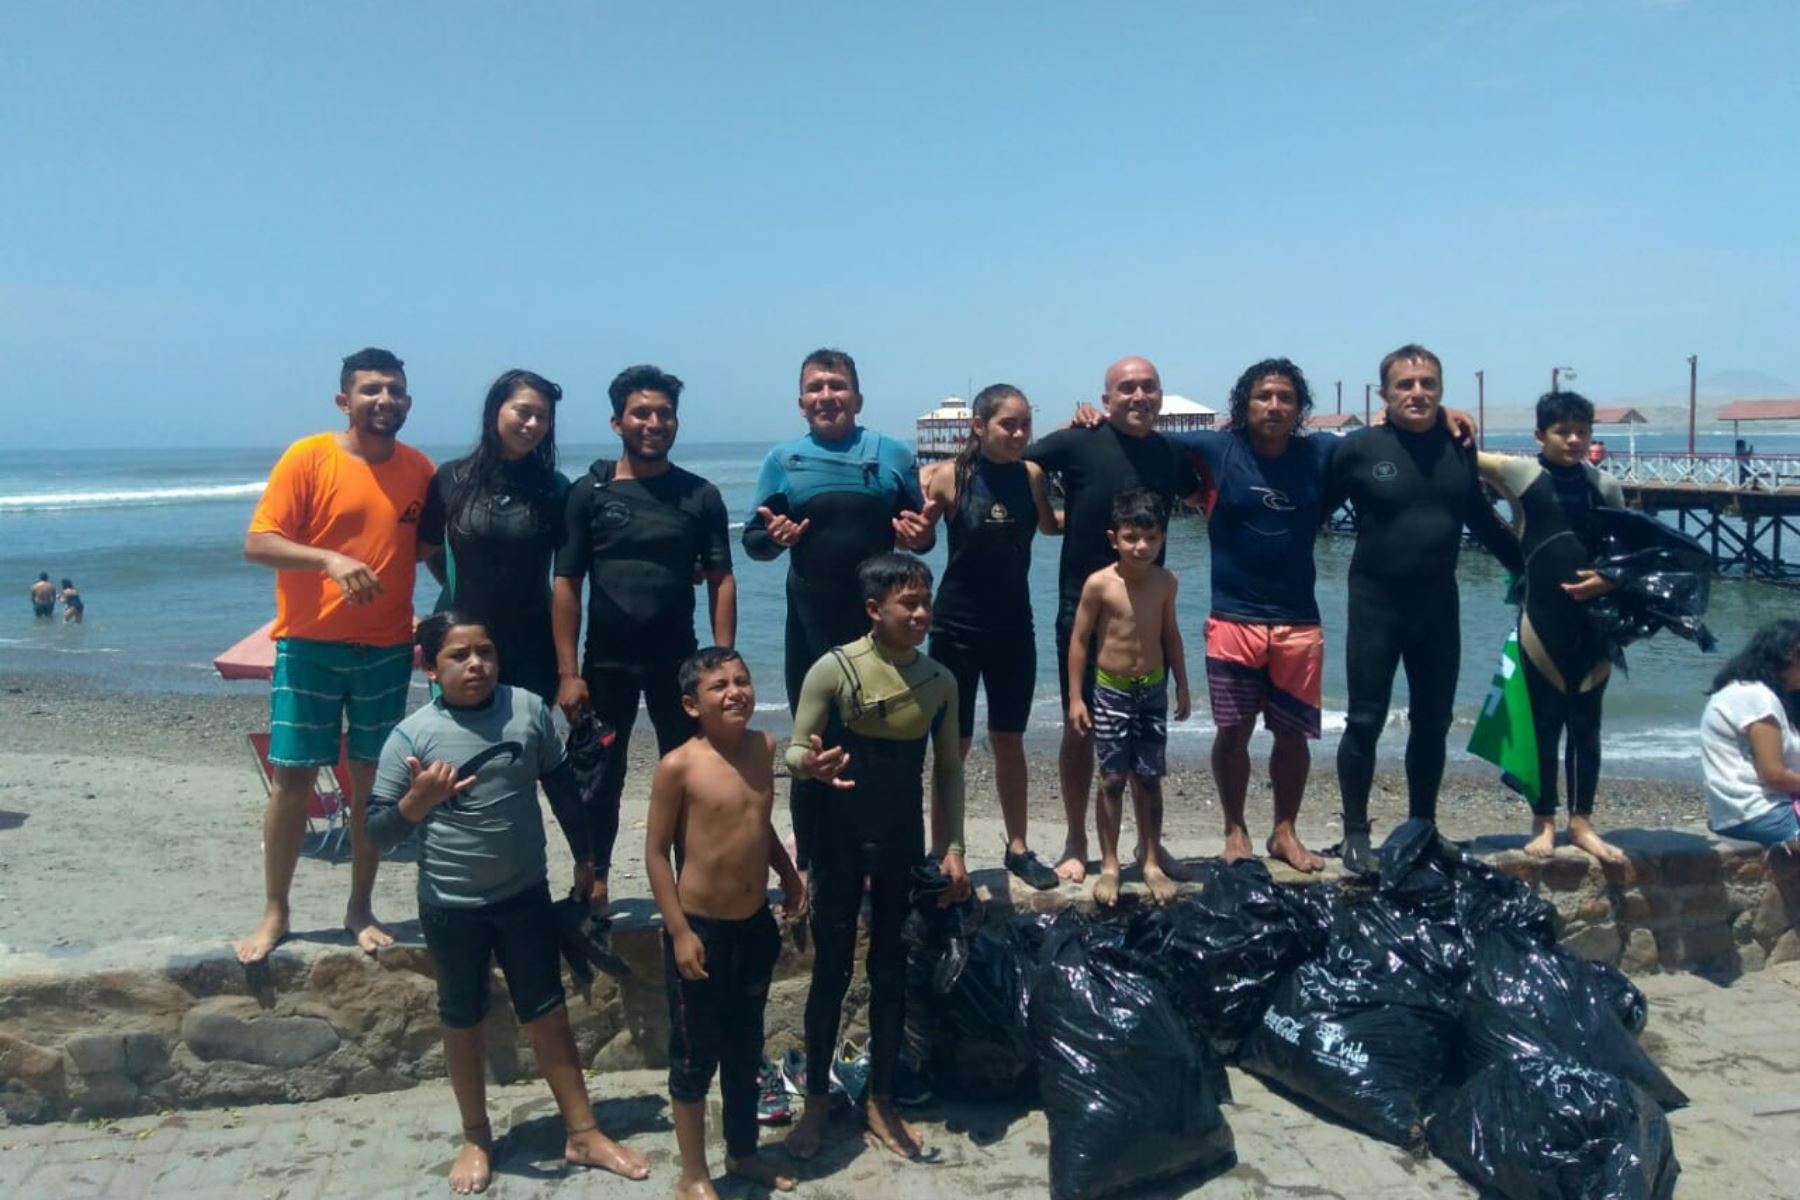 Alrededor de 1,500 voluntarios, entre ellos un grupo de surfistas, participaron en una jornada ecológica en las playas de Huanchaco.